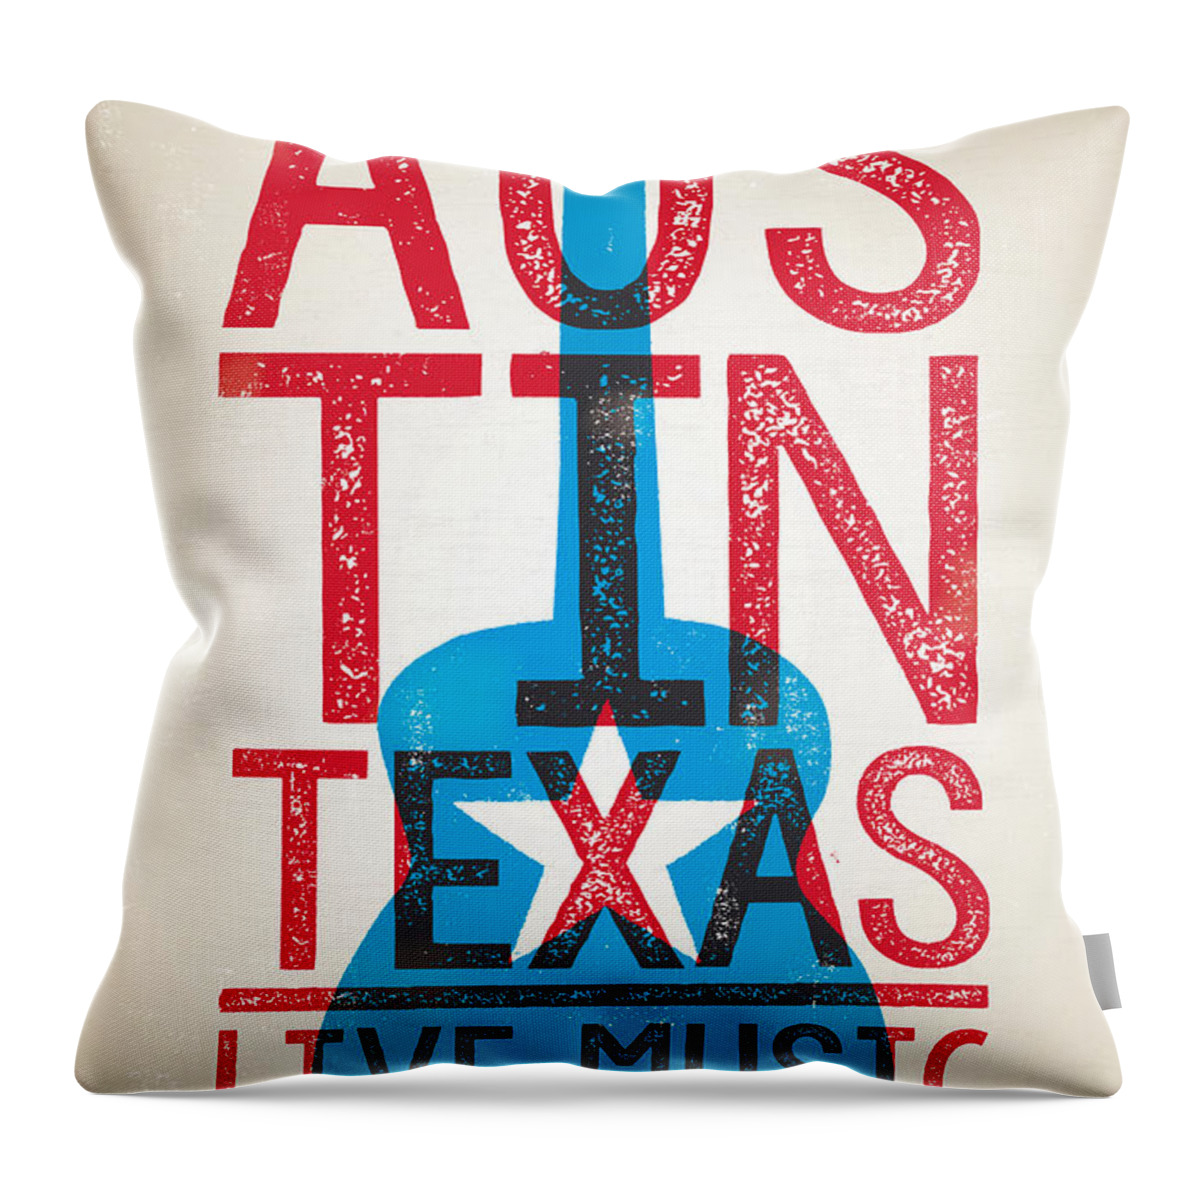 #faatoppicks Throw Pillow featuring the digital art Austin Poster - Texas - Live Music by Jim Zahniser